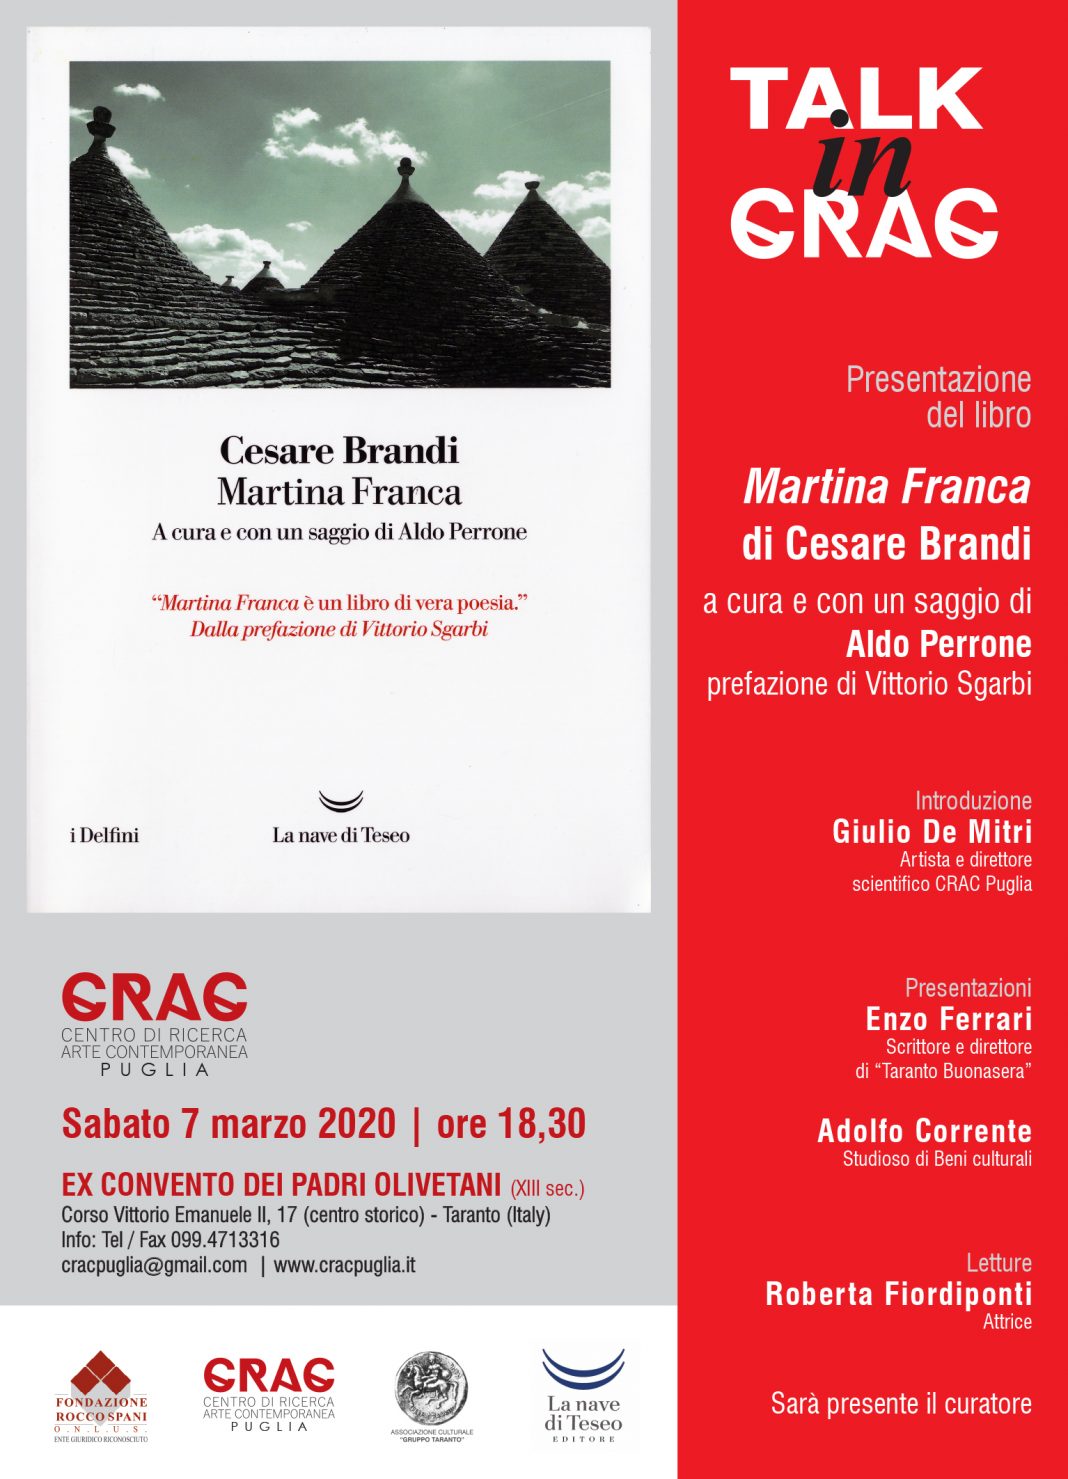 Cesare Brandi – Martina Franca. Presentazione del librohttps://www.exibart.com/repository/media/formidable/11/TALK-IN-CRAC-invito-7.03.20-1068x1479.jpg